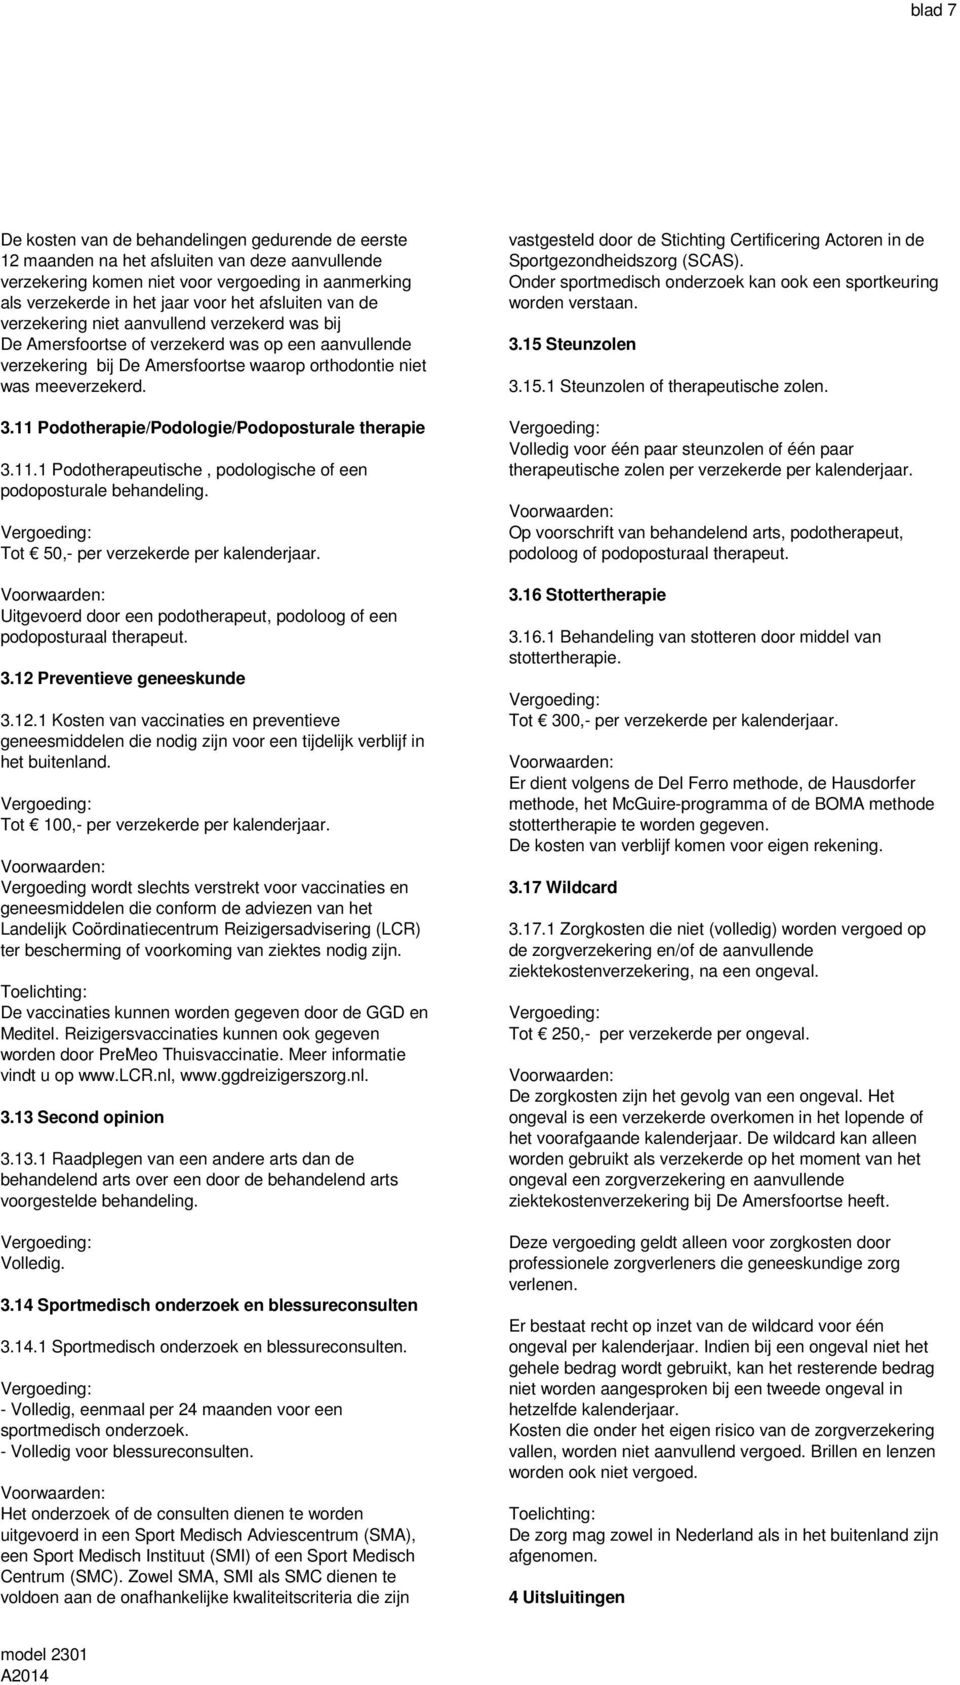 11 Podotherapie/Podologie/Podoposturale therapie 3.11.1 Podotherapeutische, podologische of een podoposturale behandeling. Tot 50,- per verzekerde per kalenderjaar.